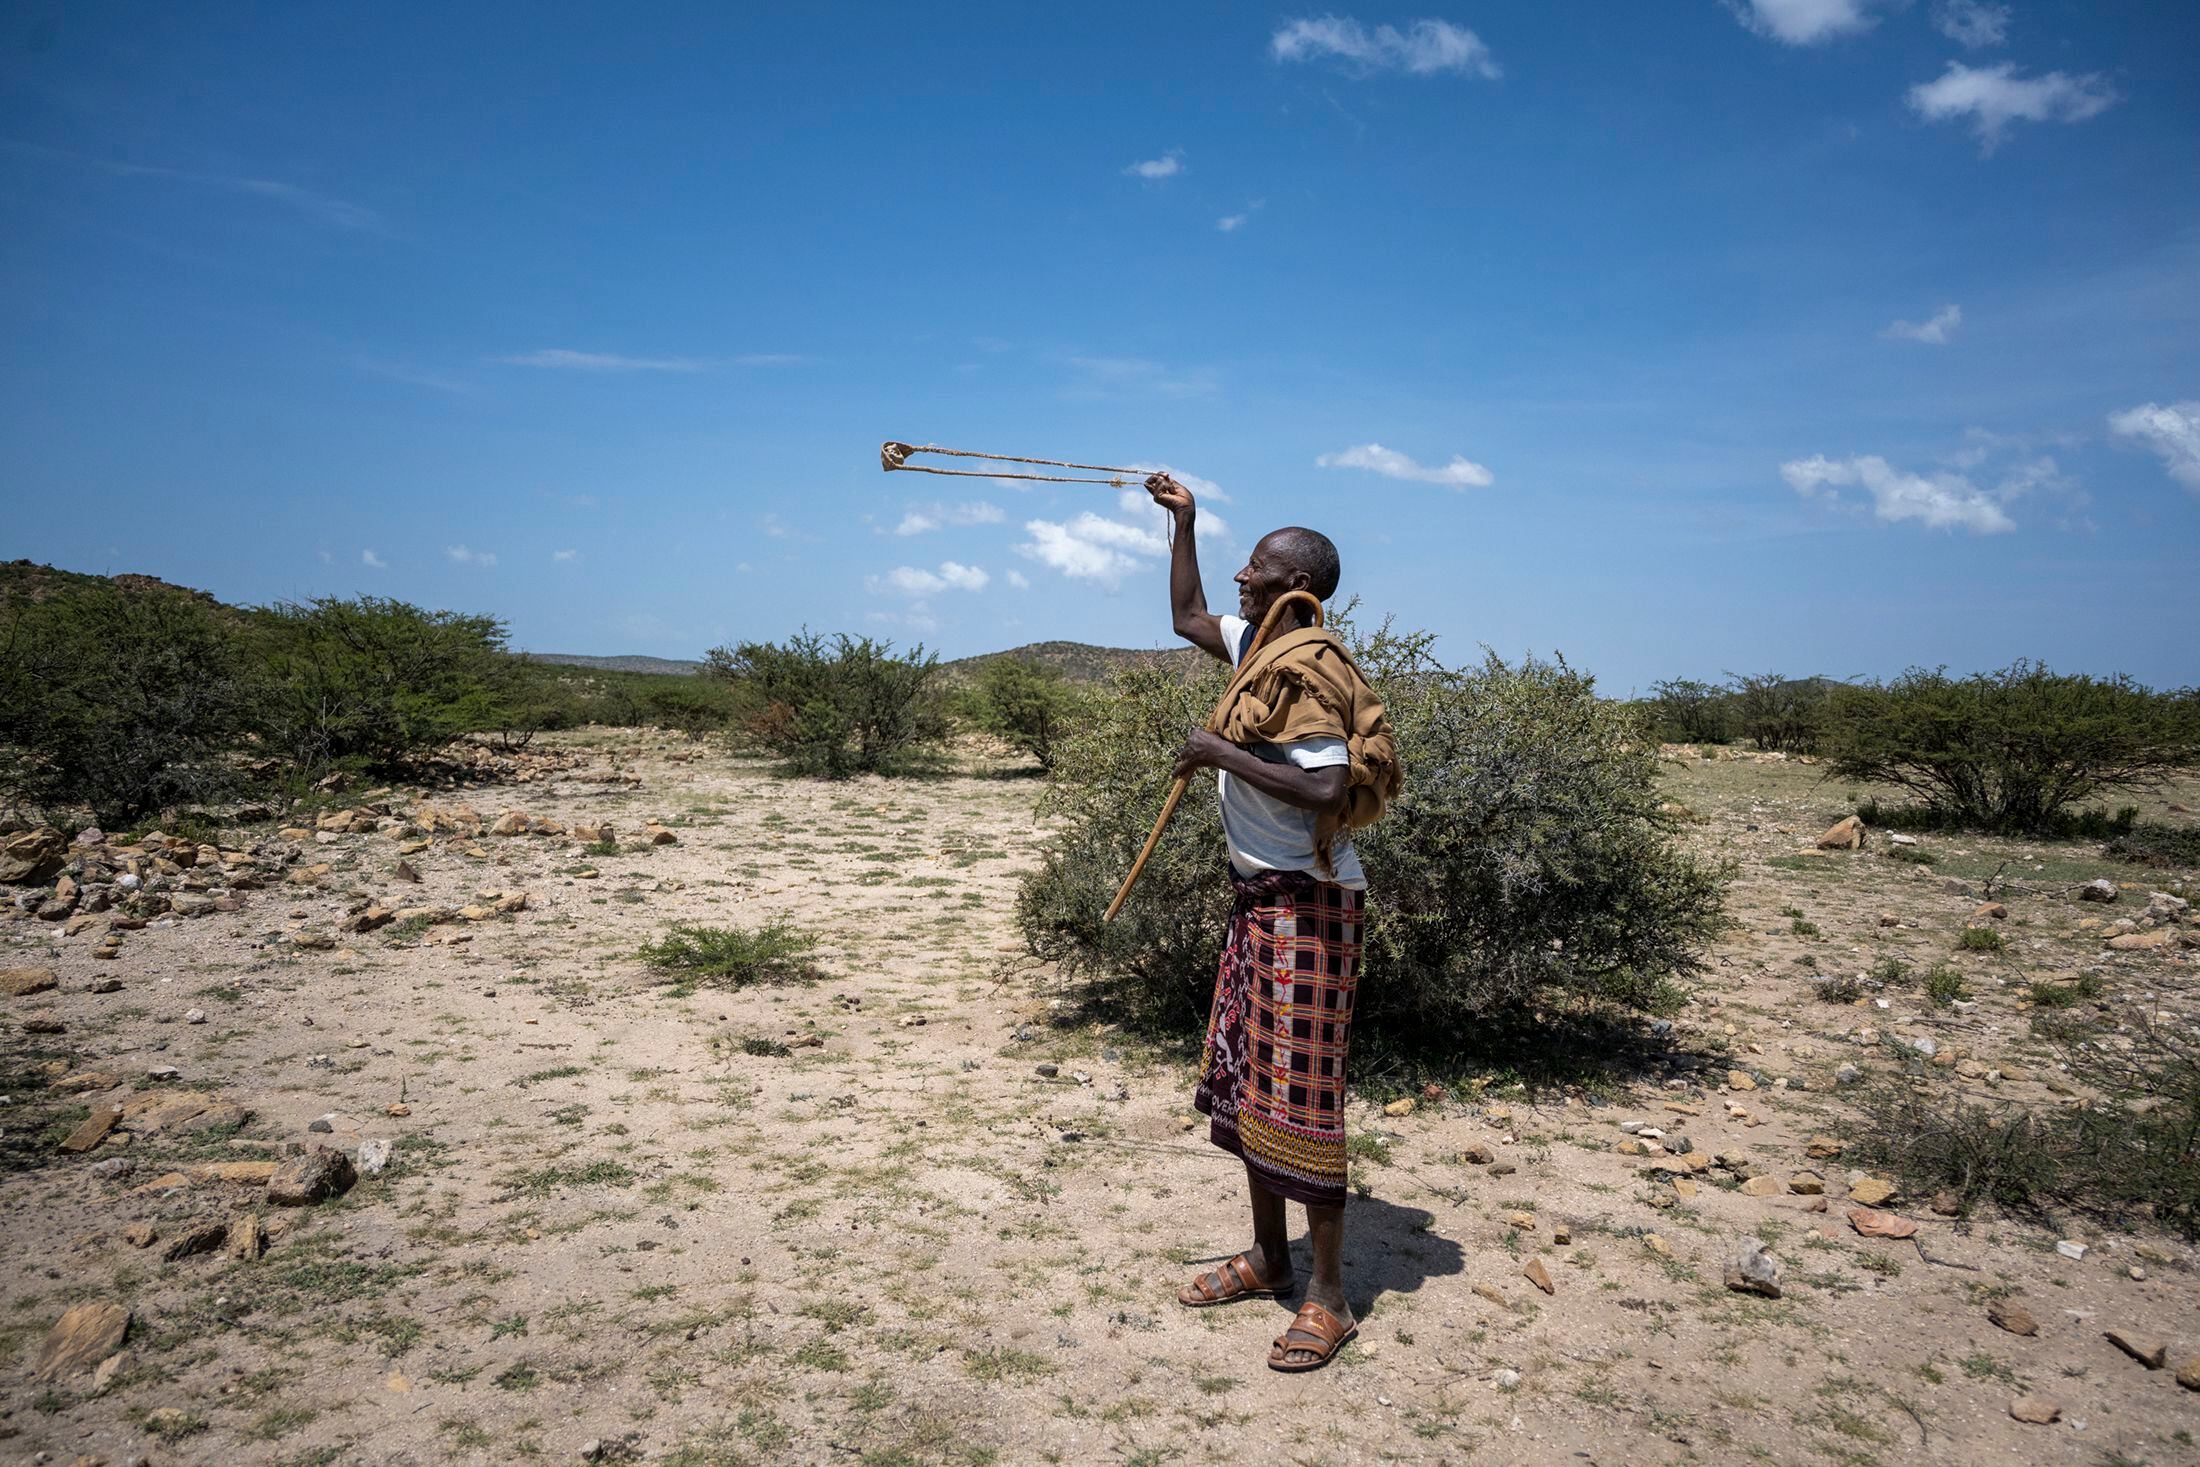 Un de los pobladores nómadas de la zona del yacimiento de Ayanle, en Etiopía, muestra al equipo sus habilidades con la honda, que normalmente se usa para cazar pequeños animales como pájaros y espantarlos de los campos de cultivo.